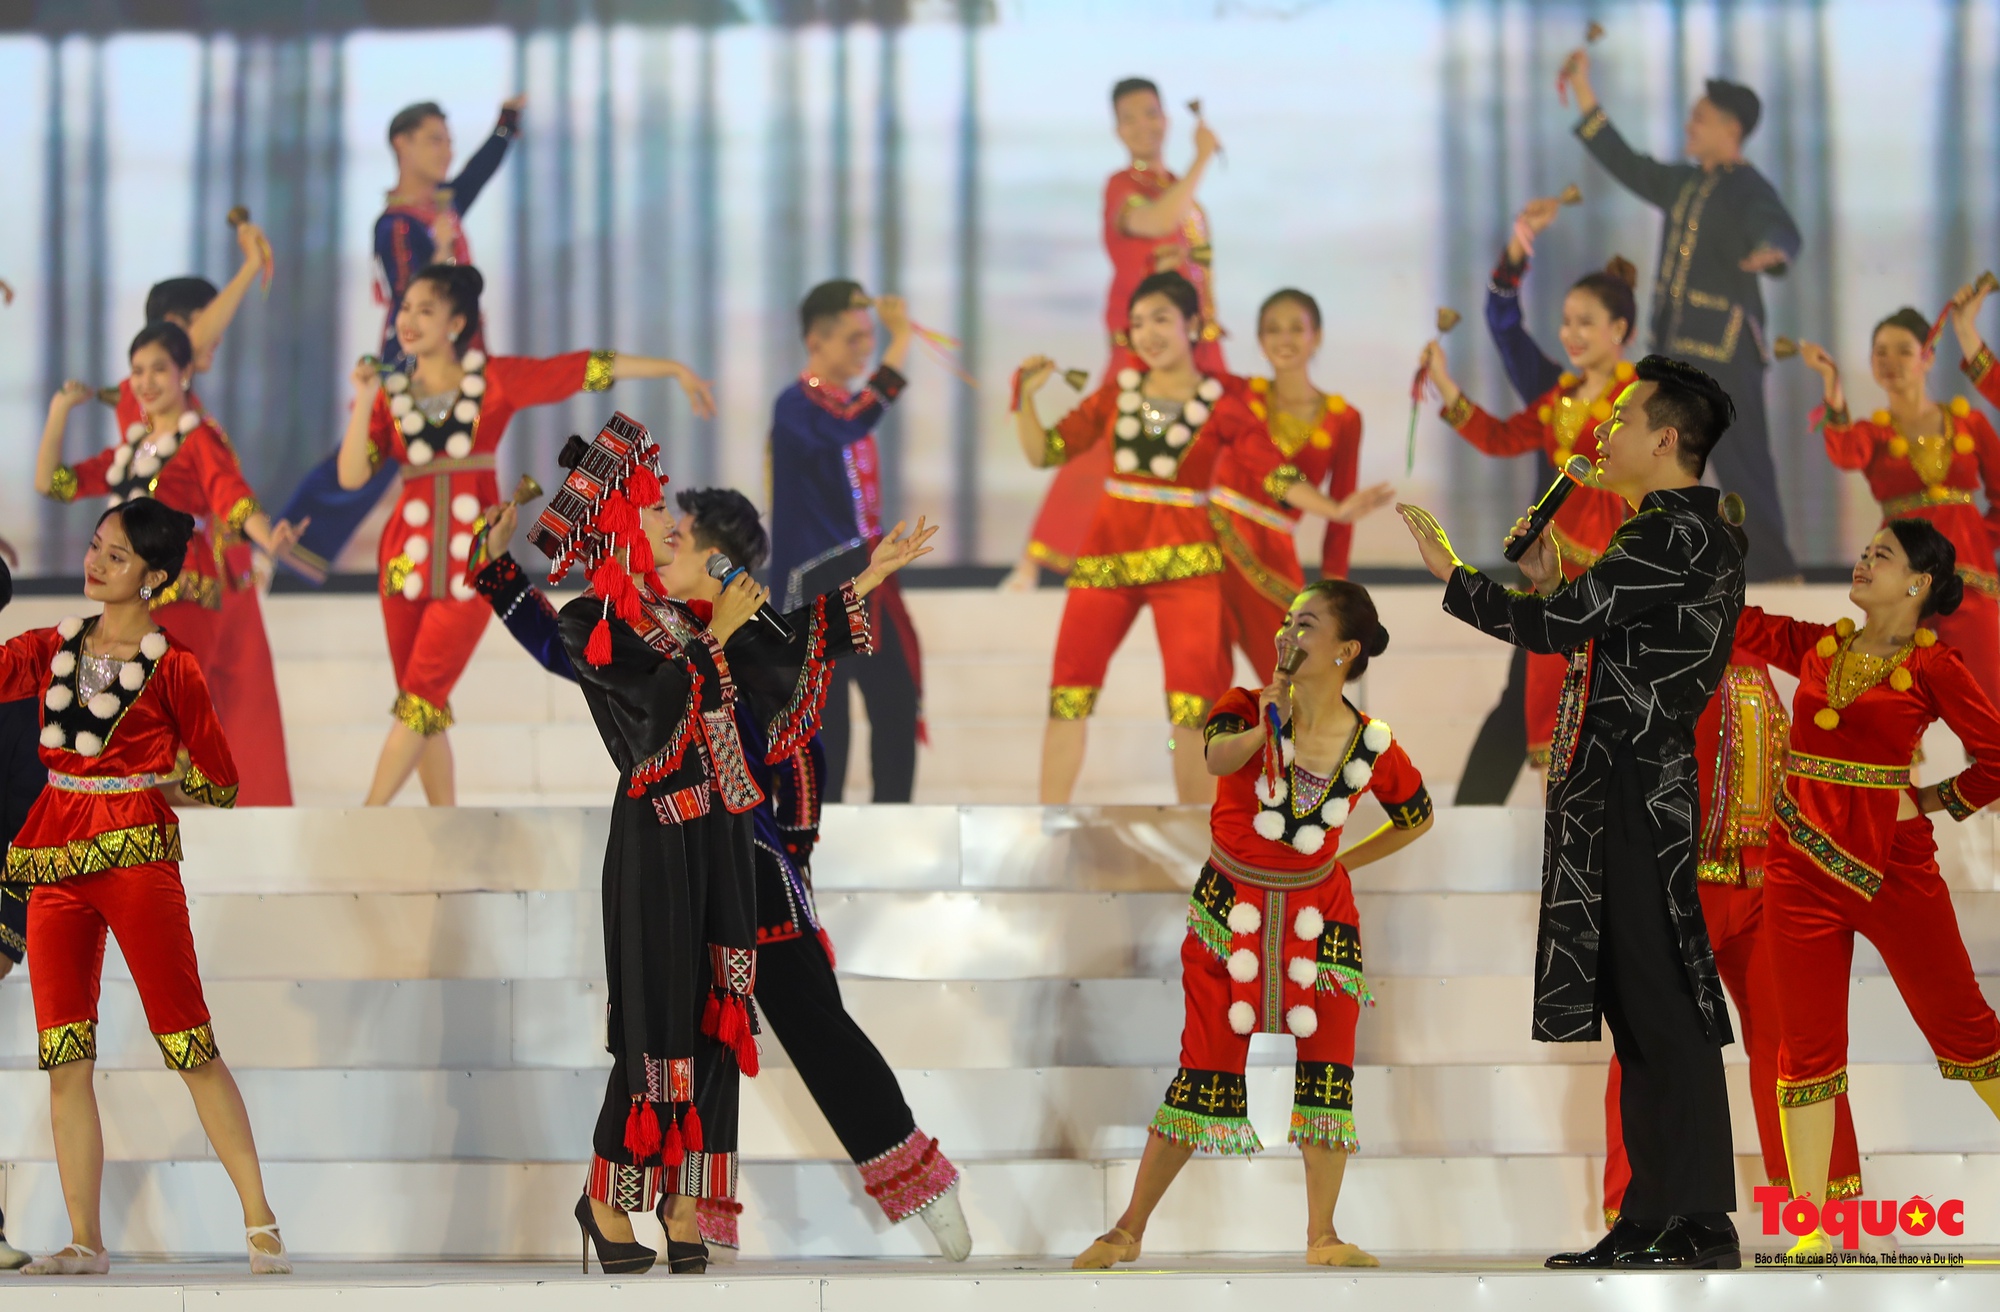 Chùm ảnh: Khai mạc Ngày hội Văn hóa dân tộc Dao toàn quốc lần thứ II năm 2022 - Ảnh 8.